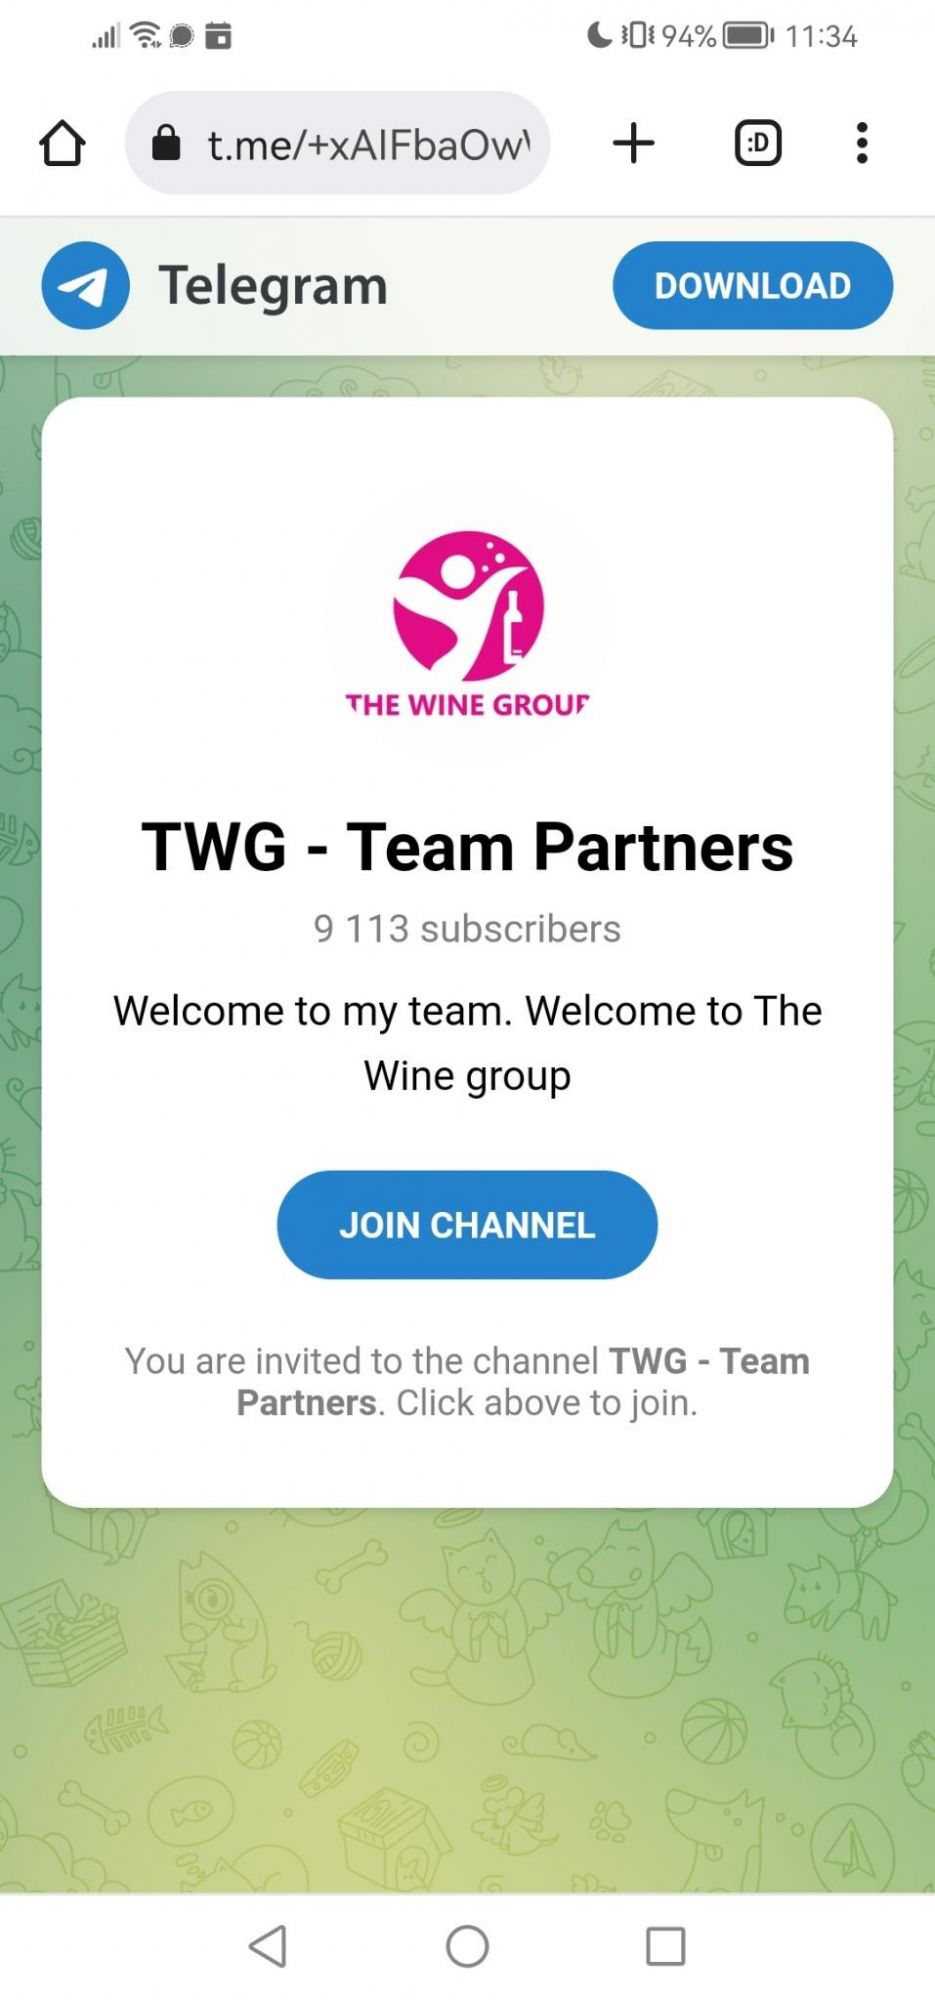 the wine group scam investment telegram revenue